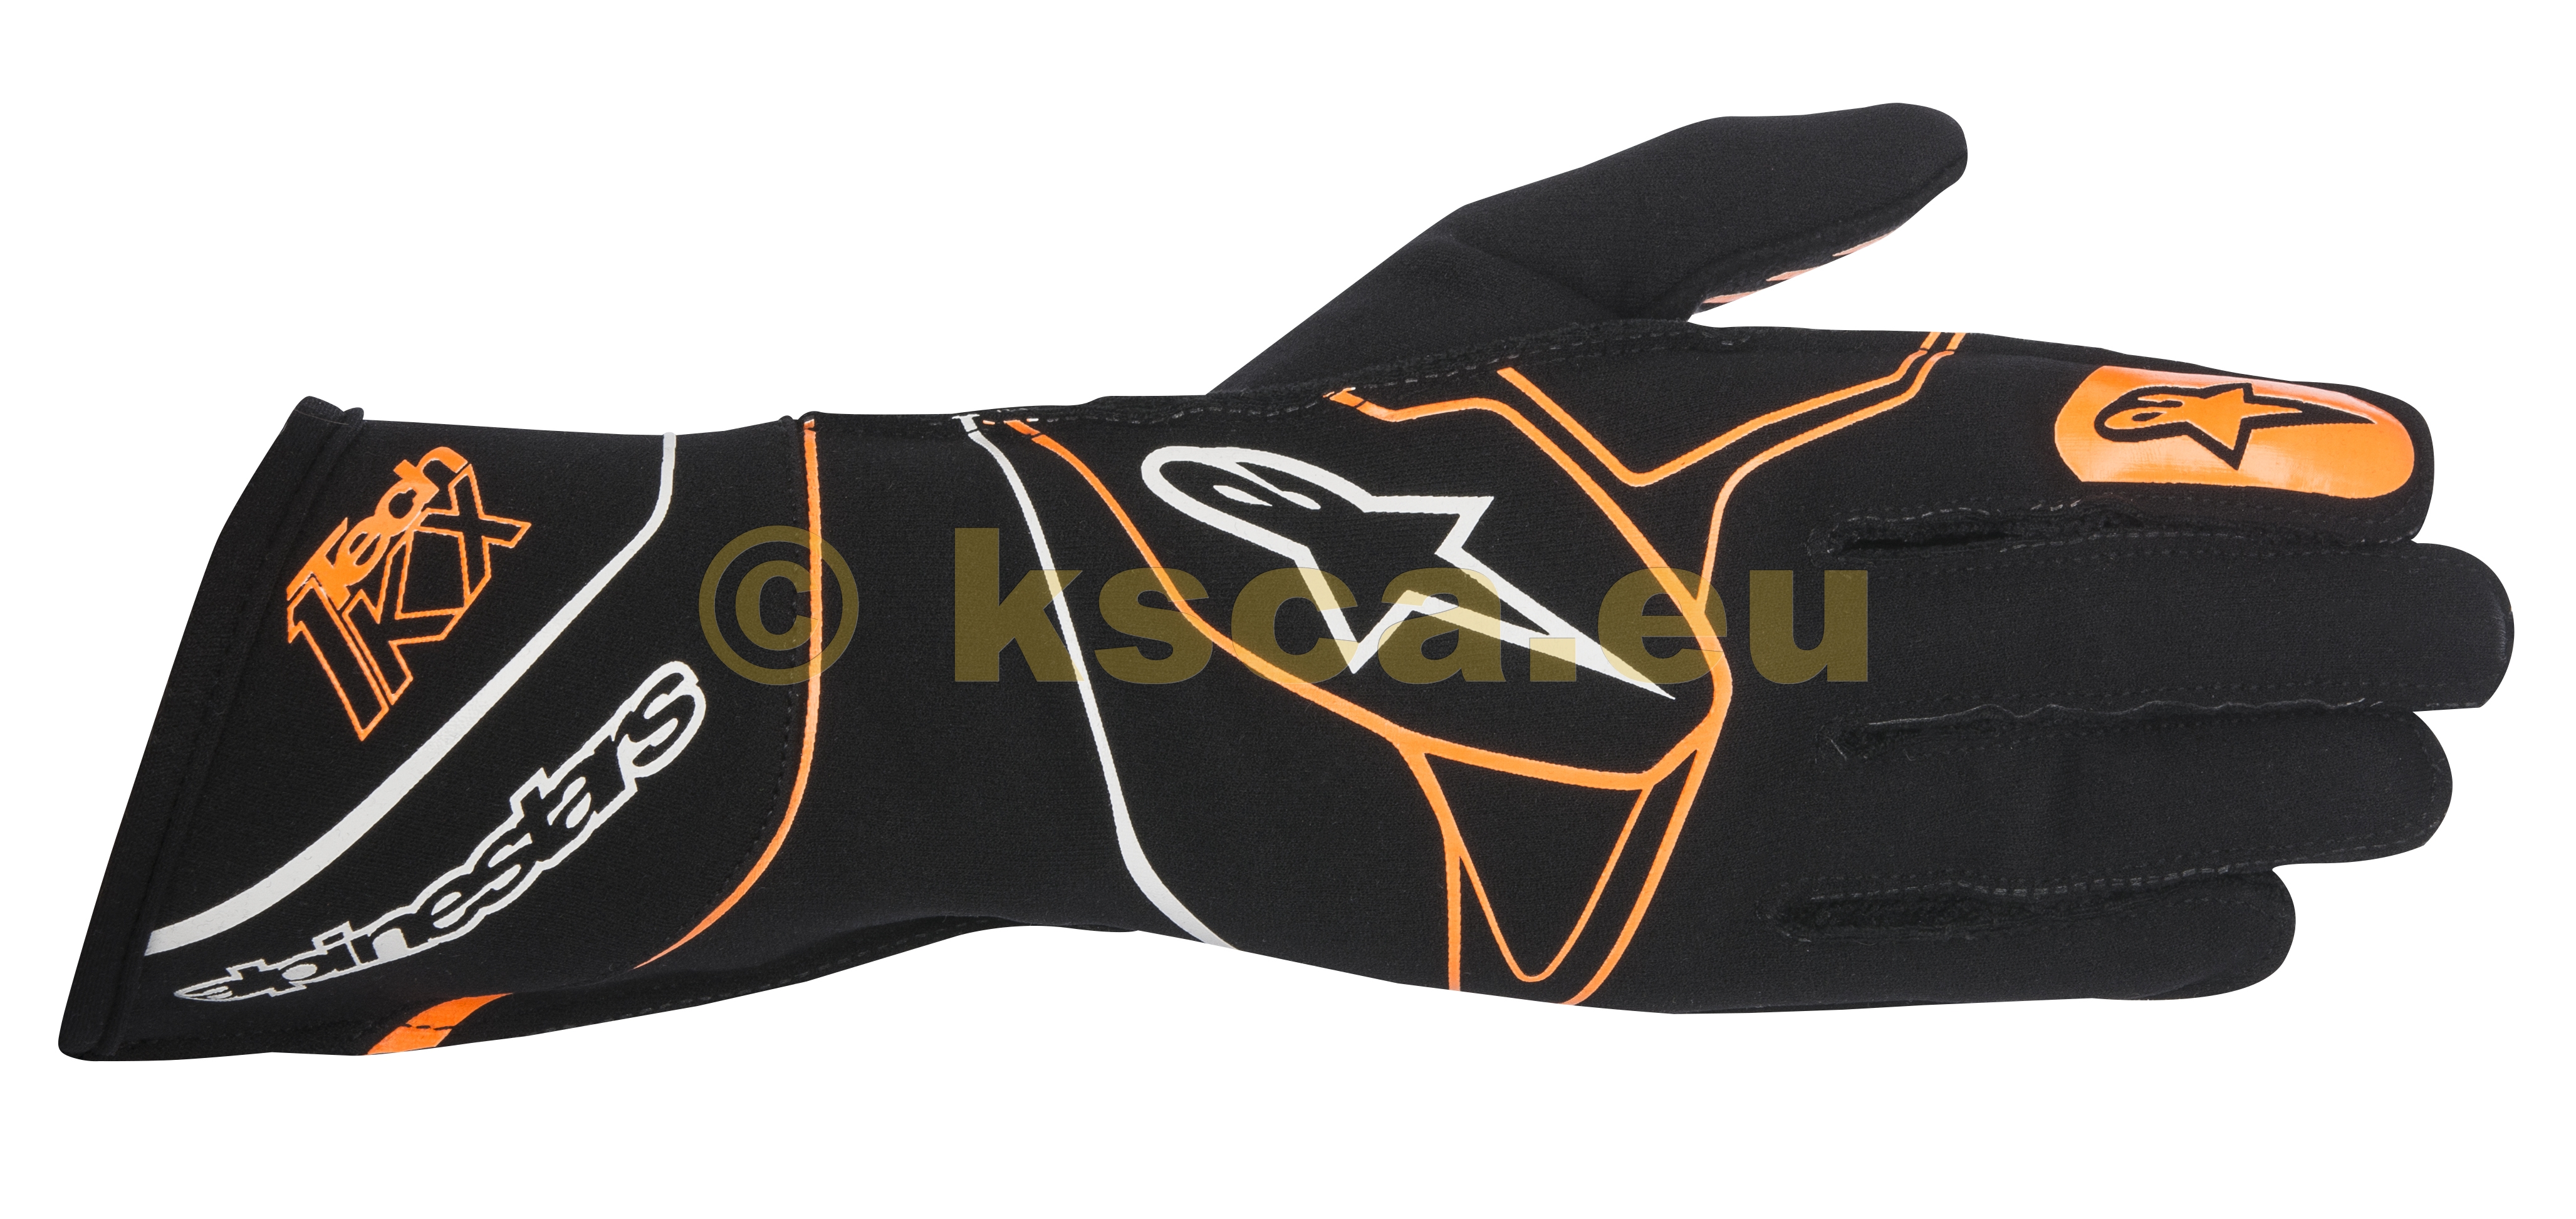 Picture of 2018 Tech-1 KX glove black/orange